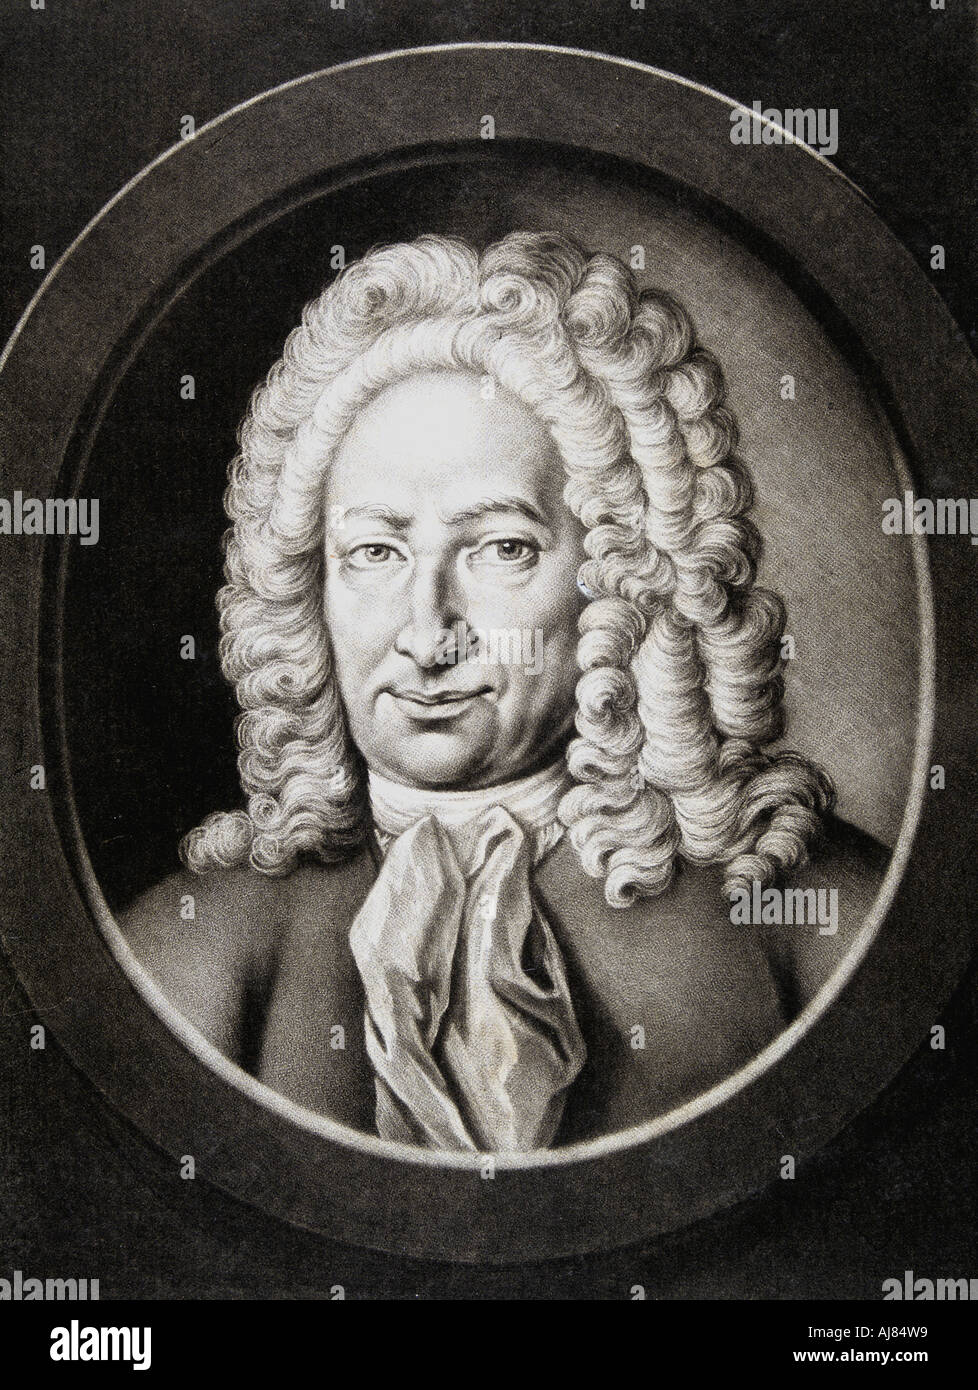 Gottfried Wilhelm von Leibniz, German philosopher and mathematician, 1781. Artist: Johann Elias Haid Stock Photo